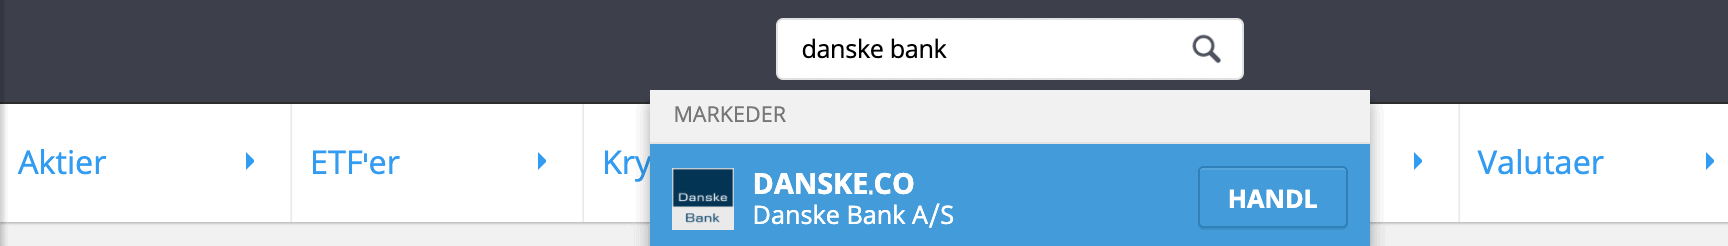 Søg efter Danske Bank aktier